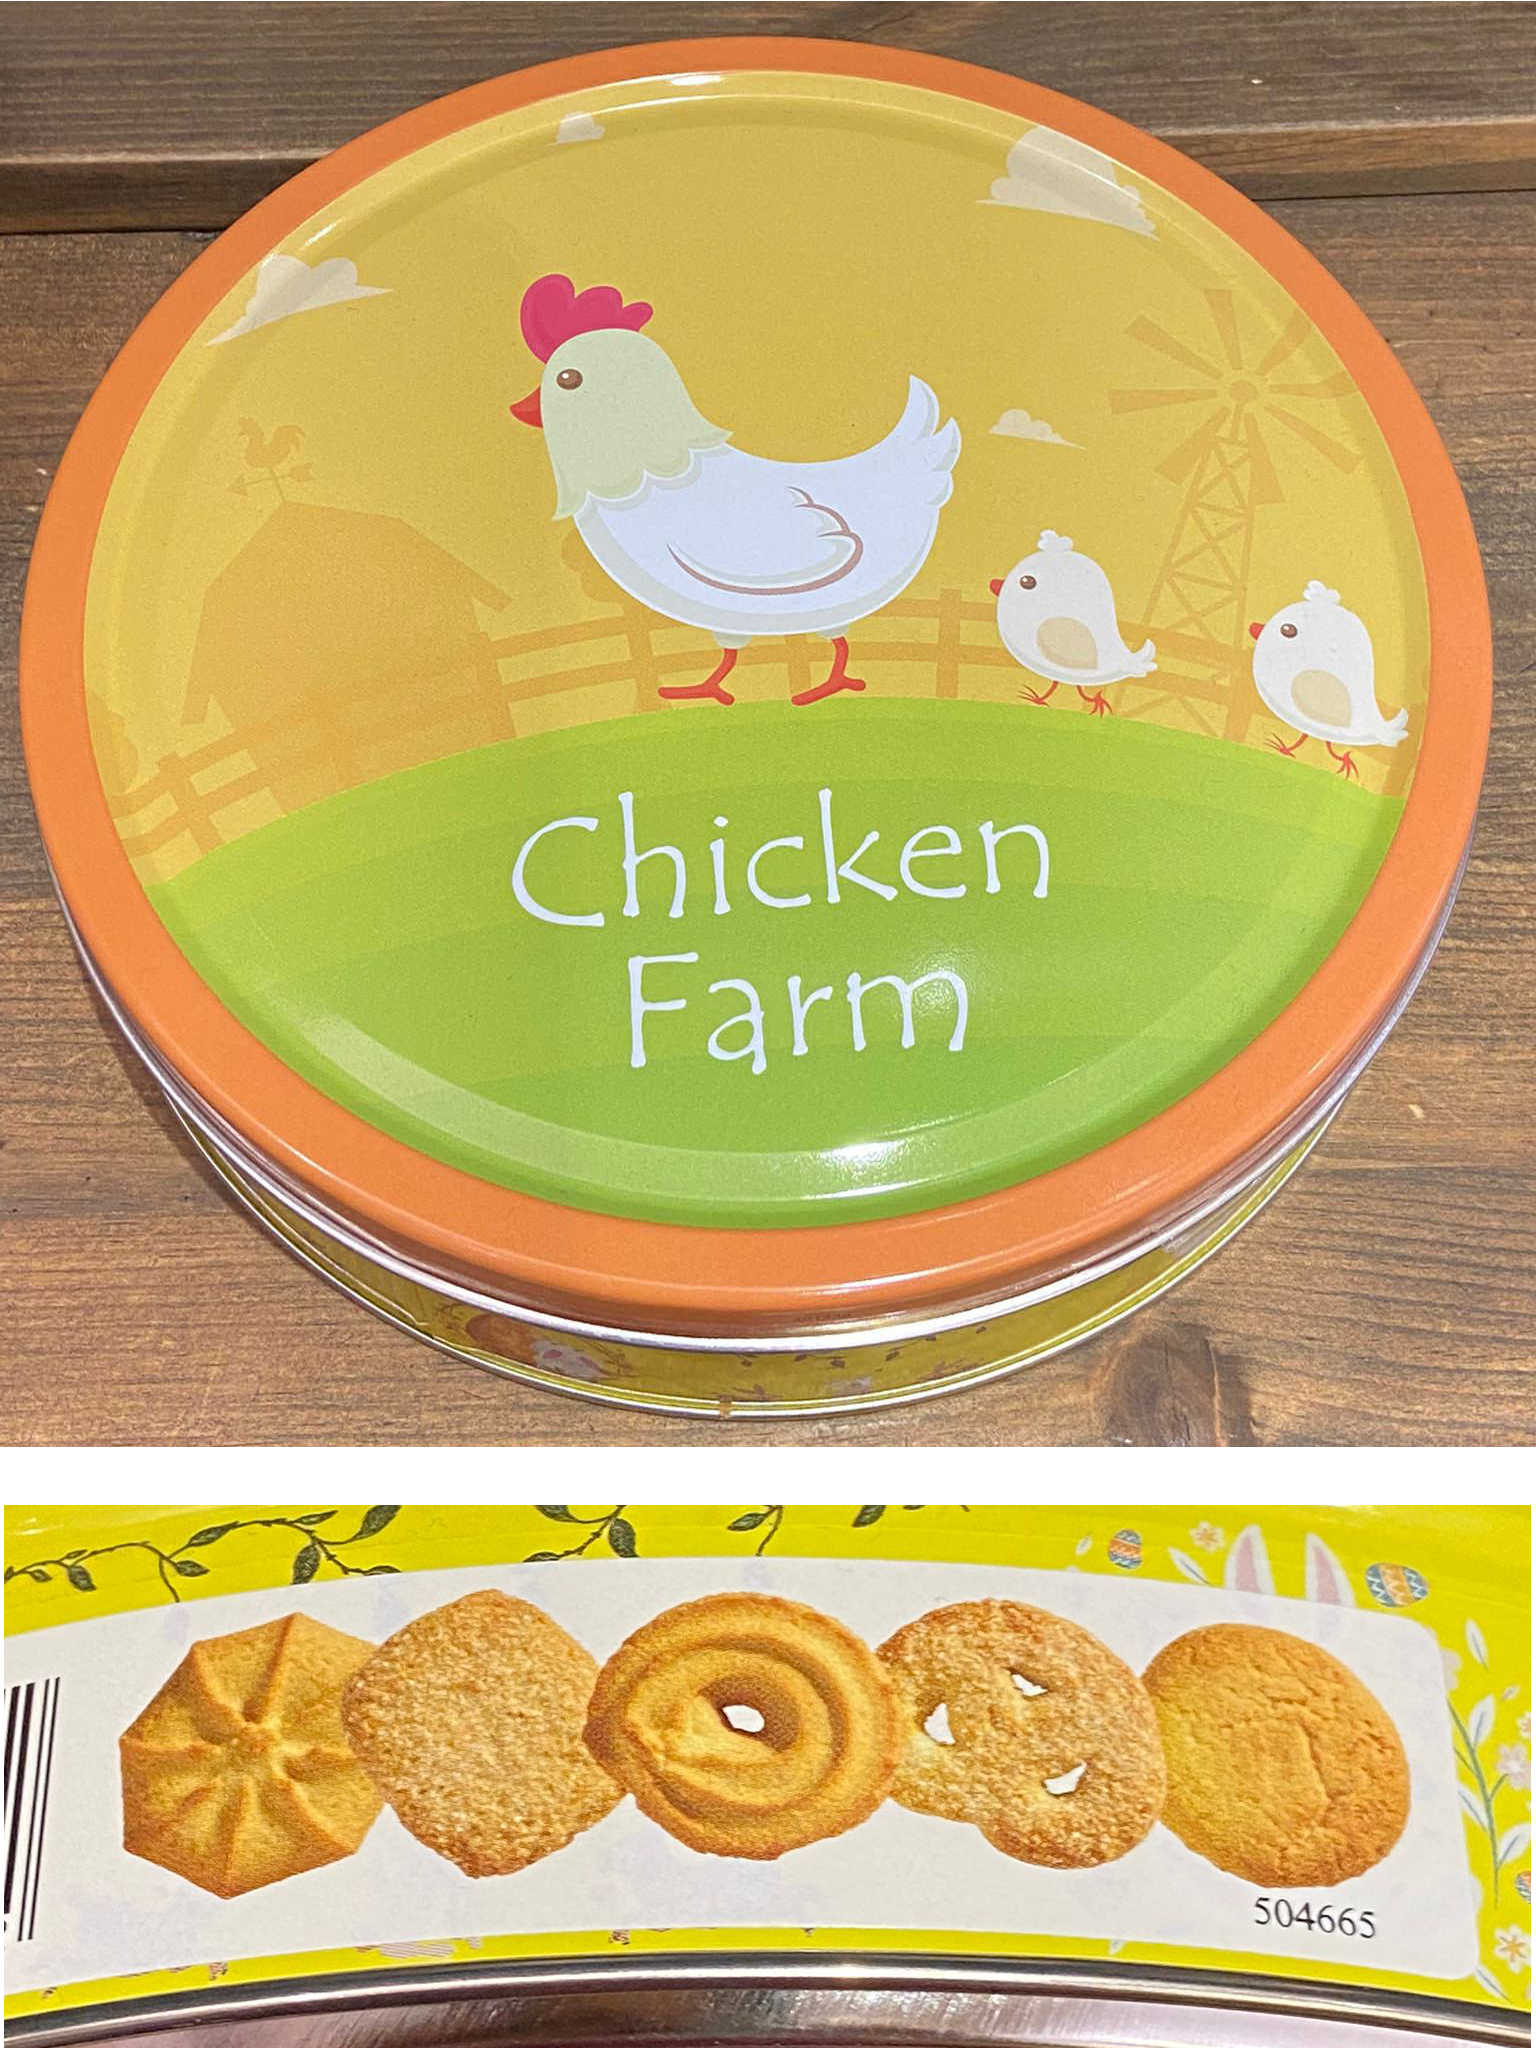 Chicken Farm Biscuits